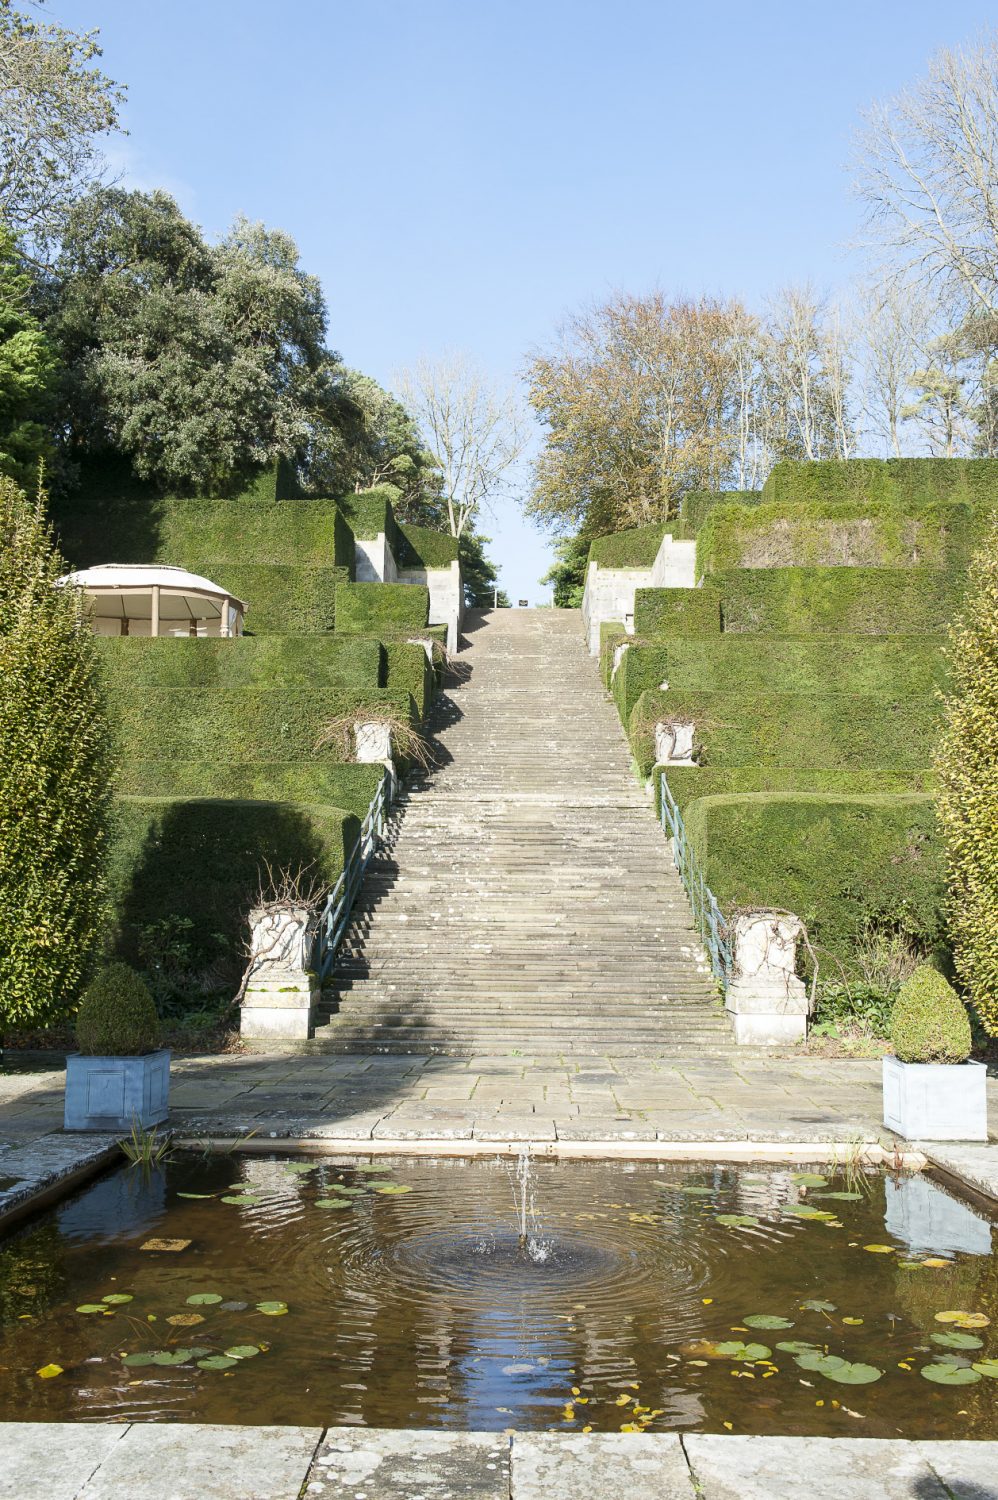 The terraced gardens